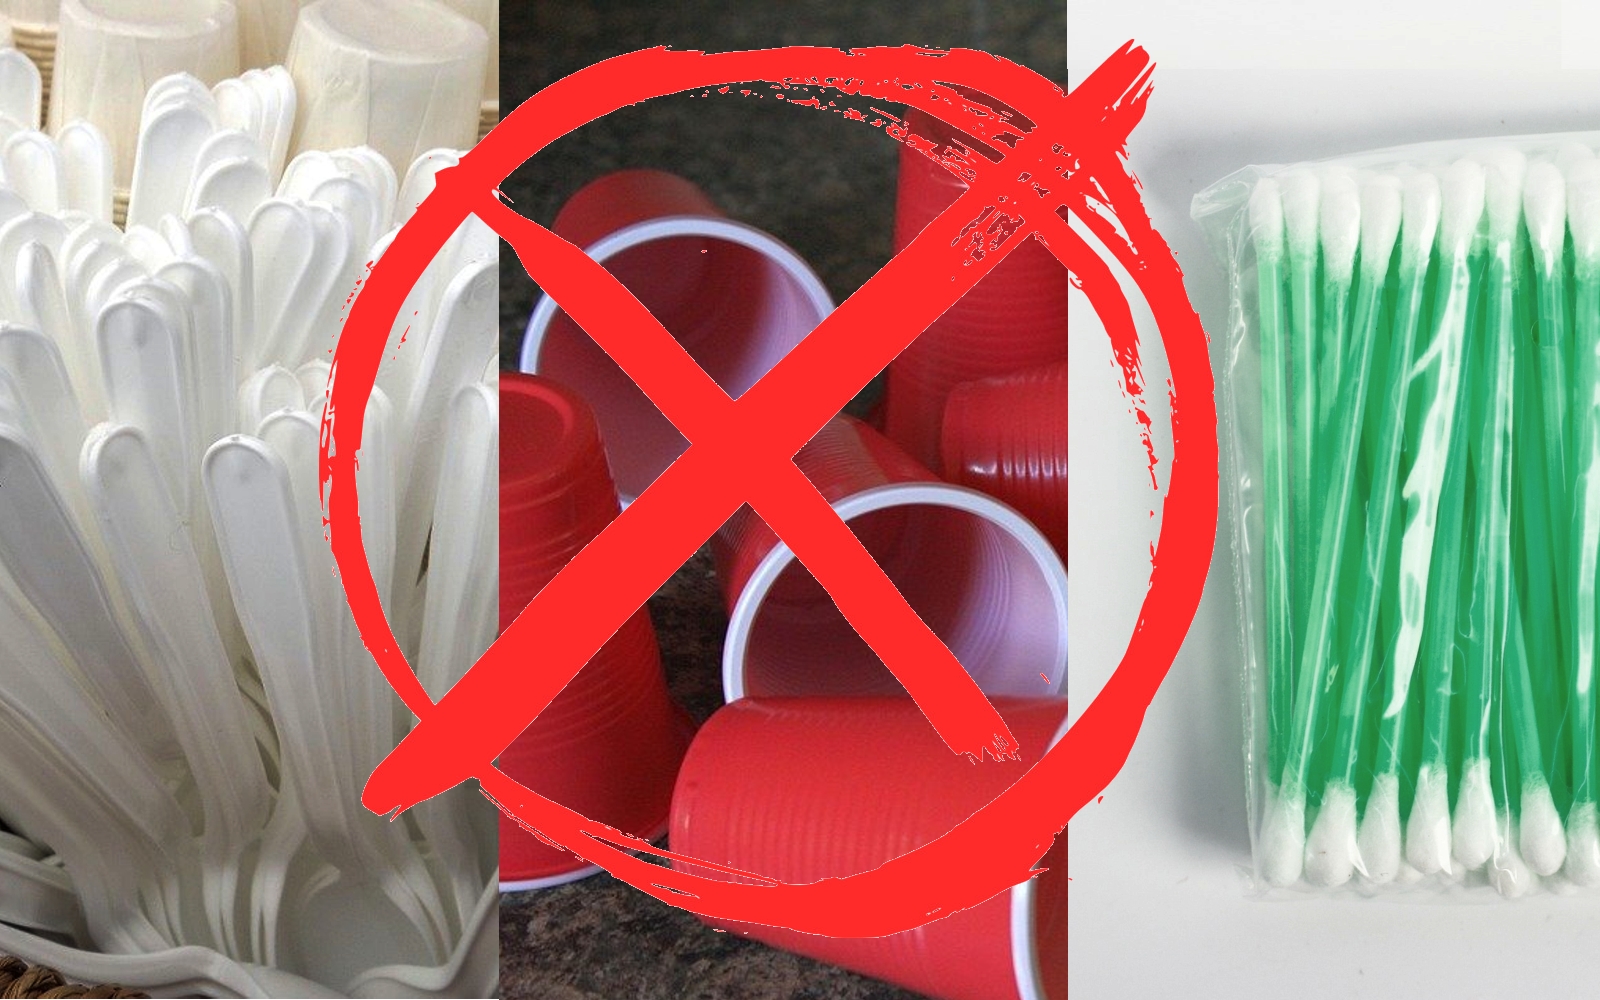 Как борьбу с мусорной проблемой выдали за «запрет чистки ушей»